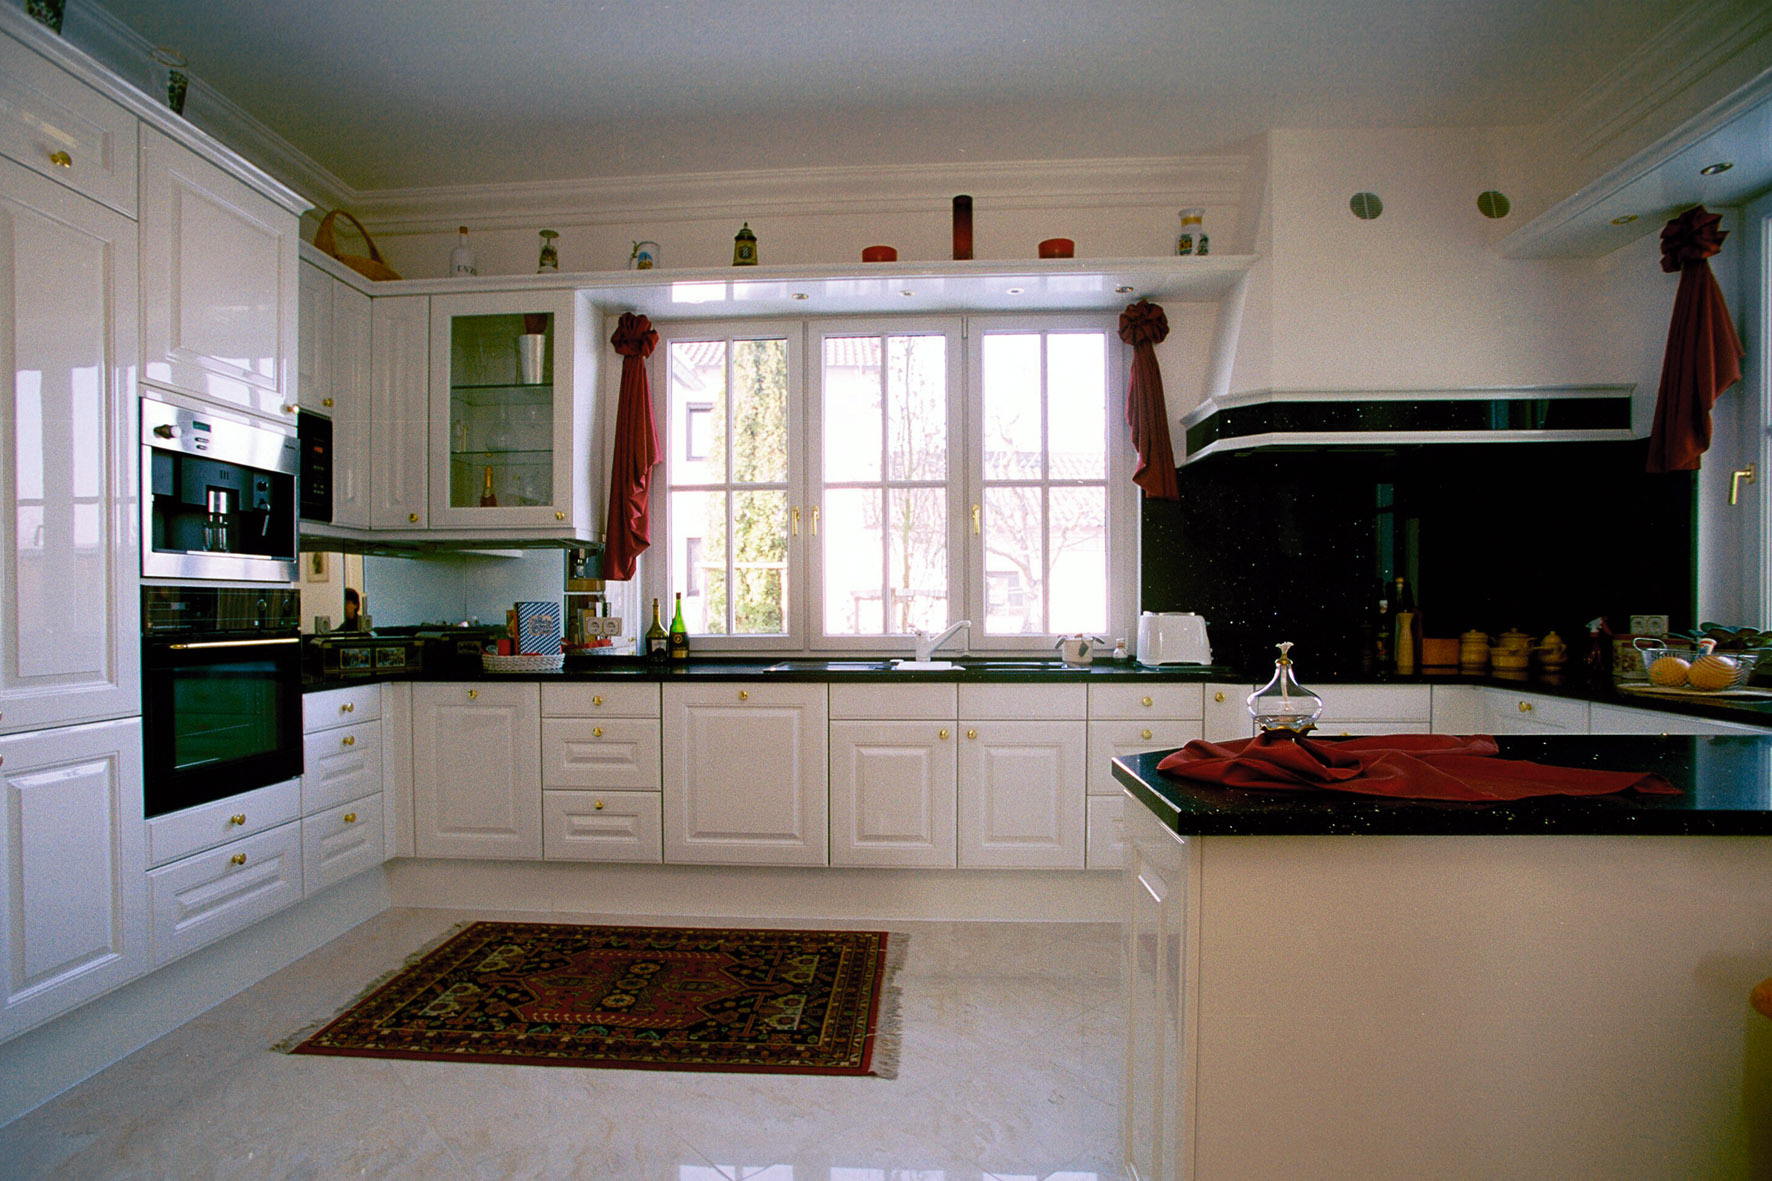 White Model Kitchen Interior photo - 8